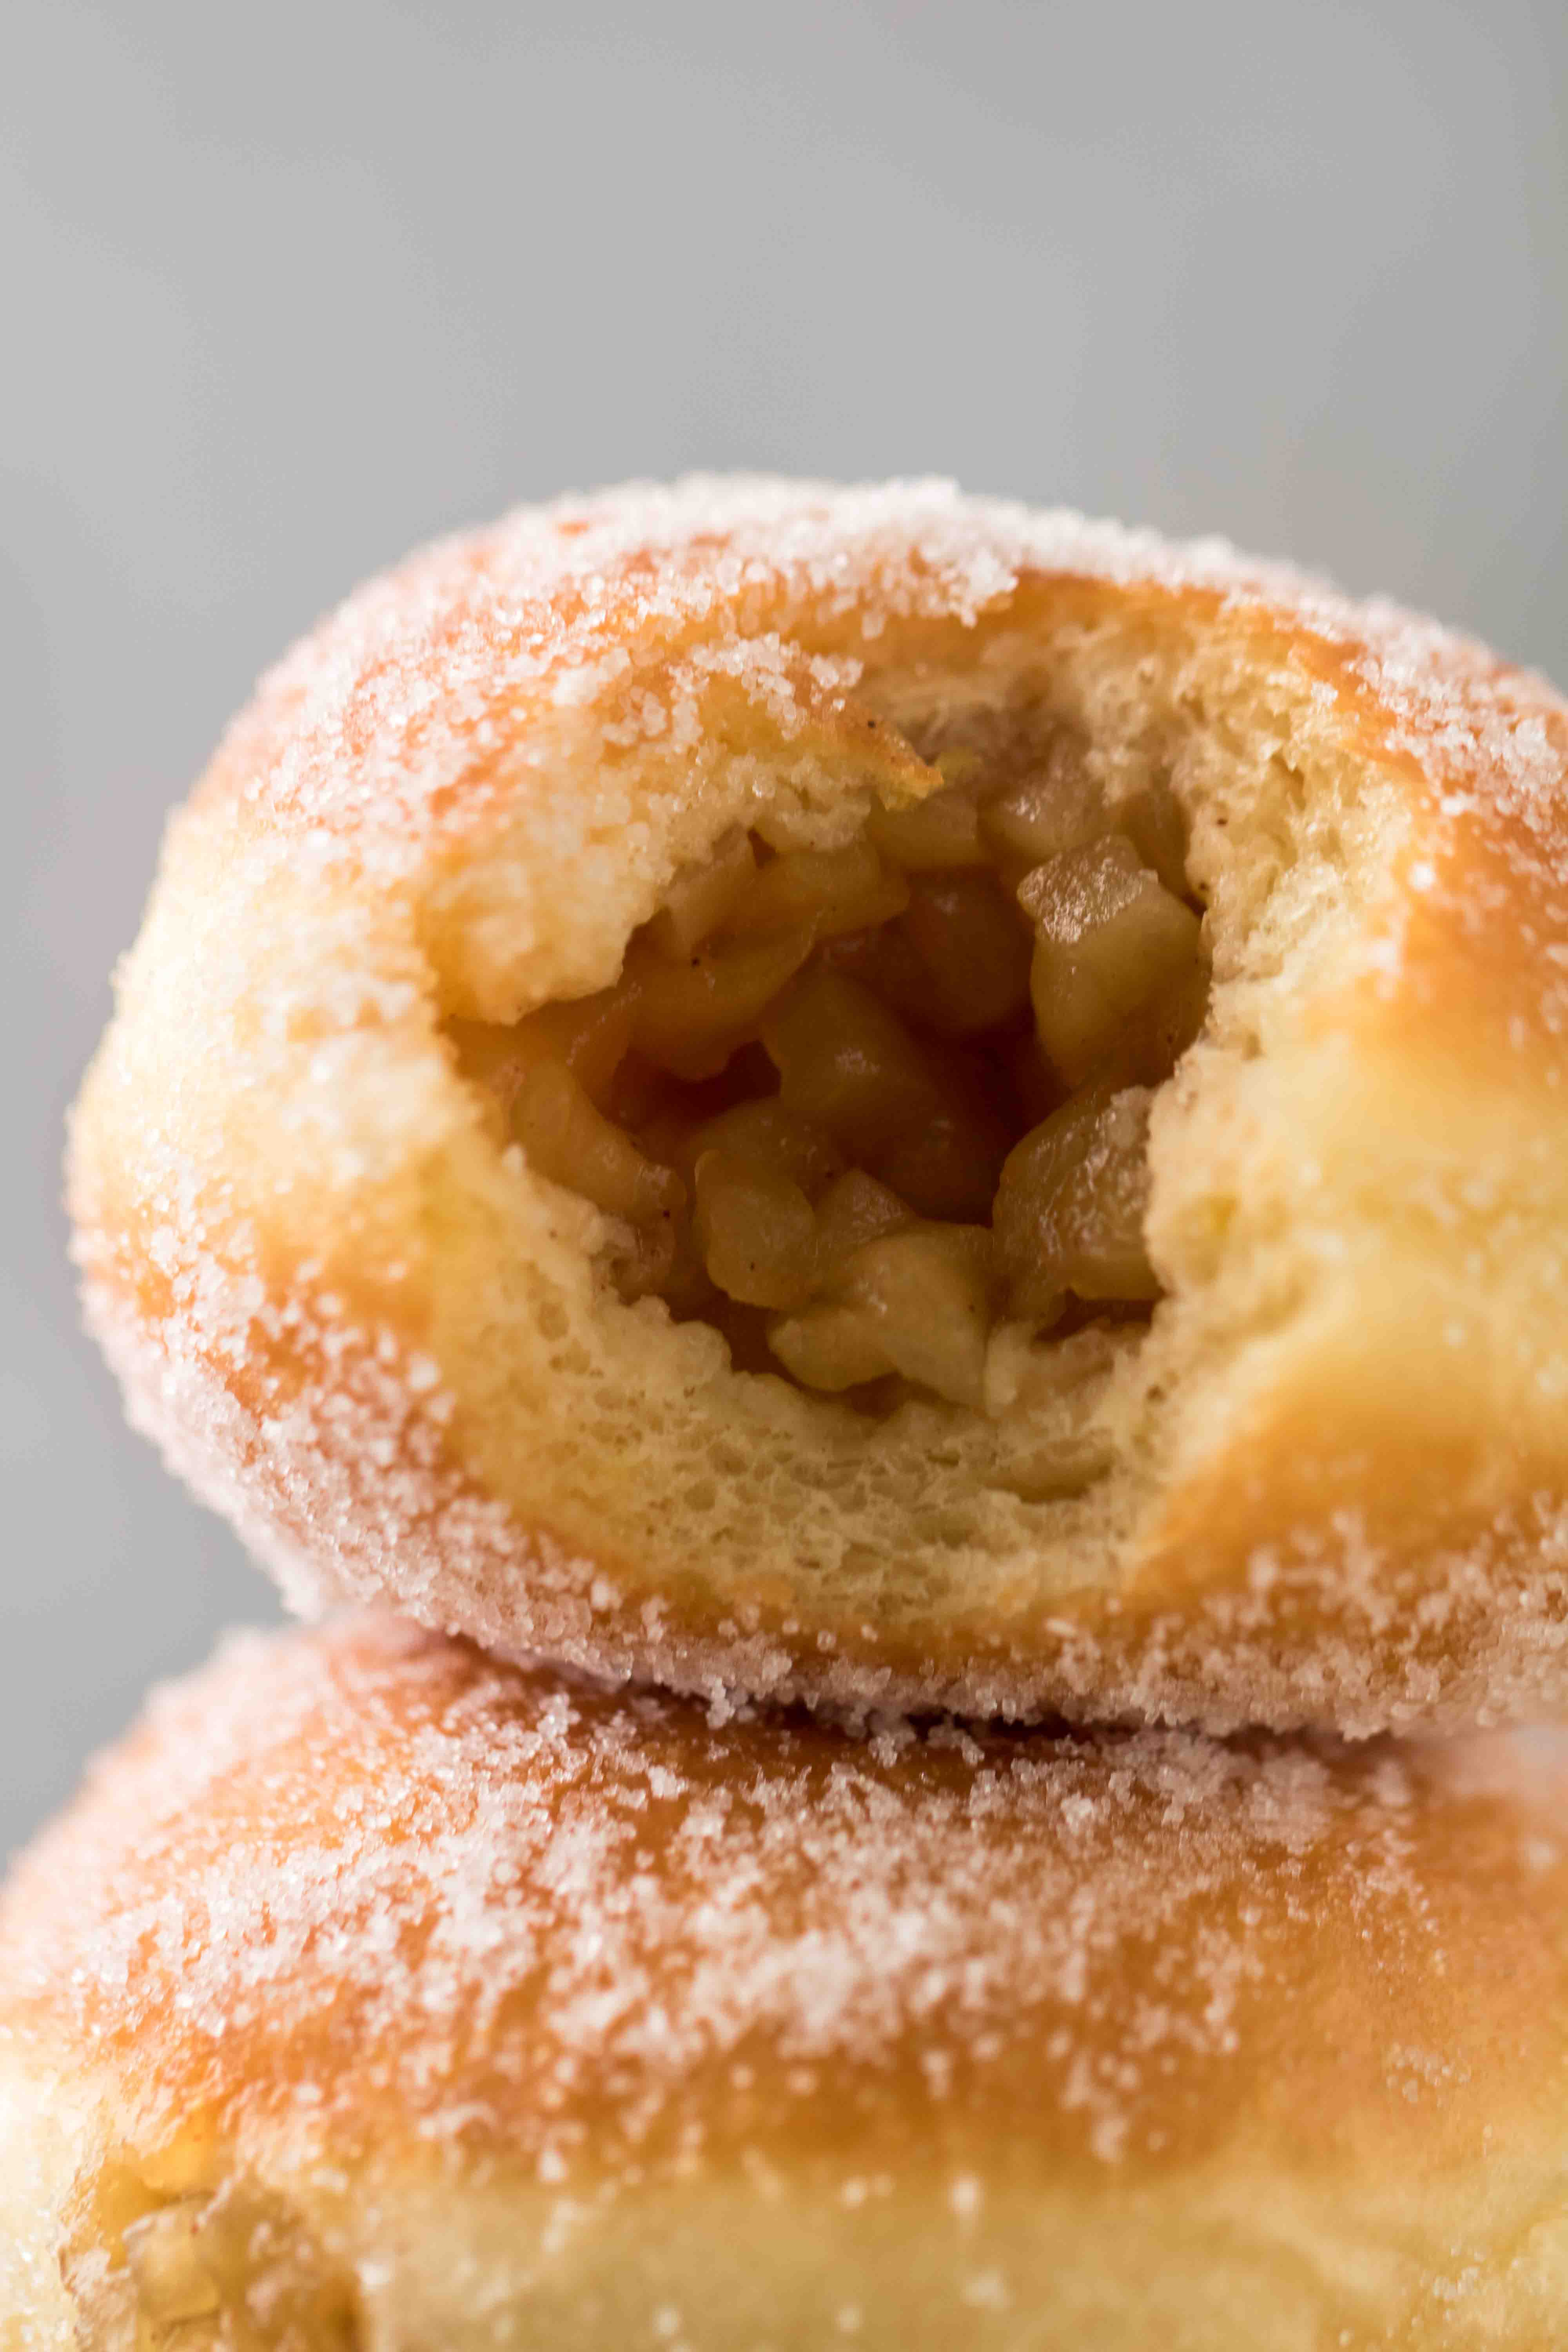 Apple stuffed donuts